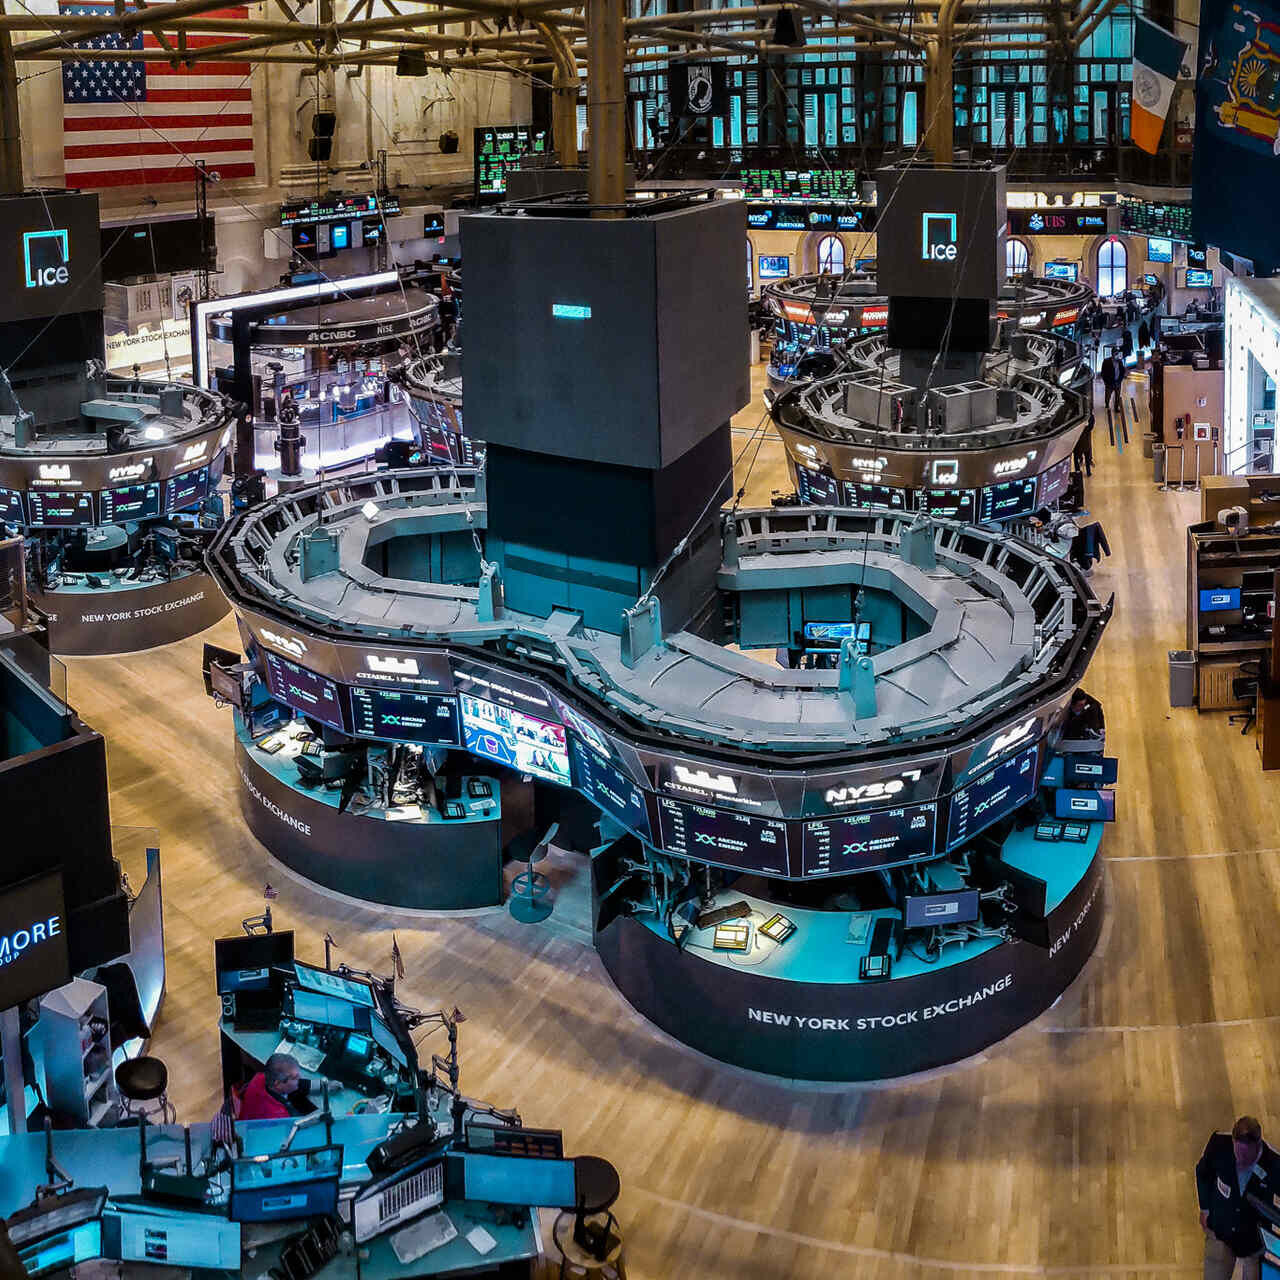 ETF: Нью-Йоркийн хөрөнгийн биржийн арилжааны талбар (Нью-Йоркийн хөрөнгийн бирж эсвэл товчилсон нэрээр NYSE), алдарт Уолл Стрийт дээр суурилсан бөгөөд 1817 онд байгуулагдсан.